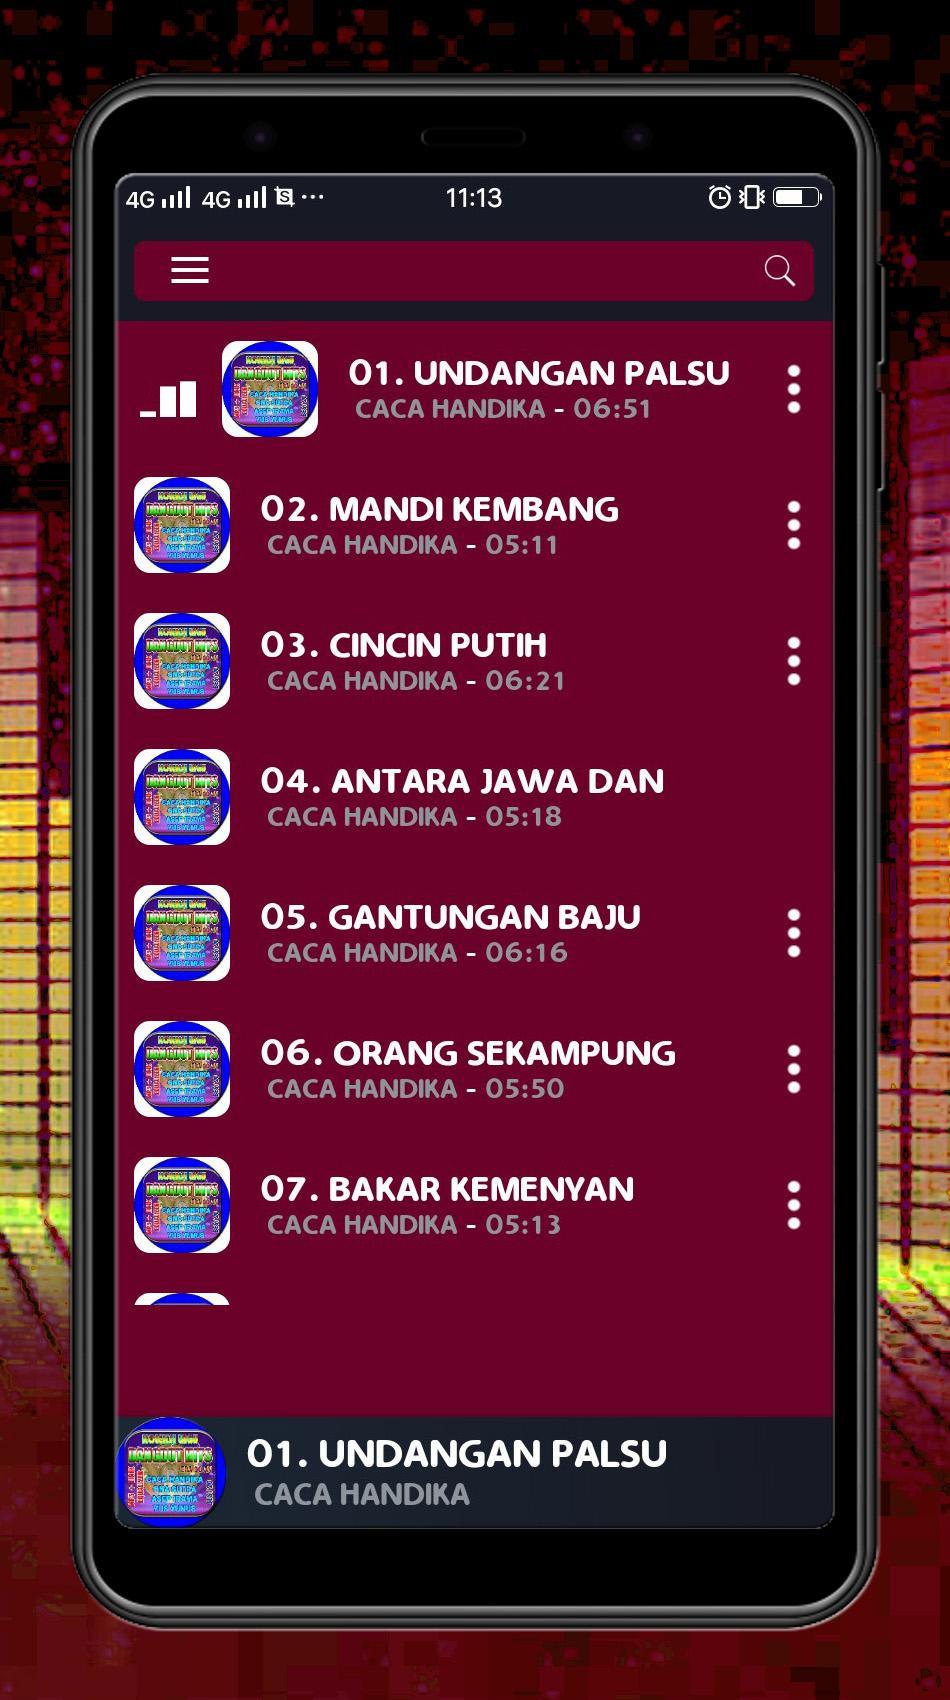 Lagu Dangdut Hits Caca Handika Dkk Mp3 Lirik For Android Apk Download